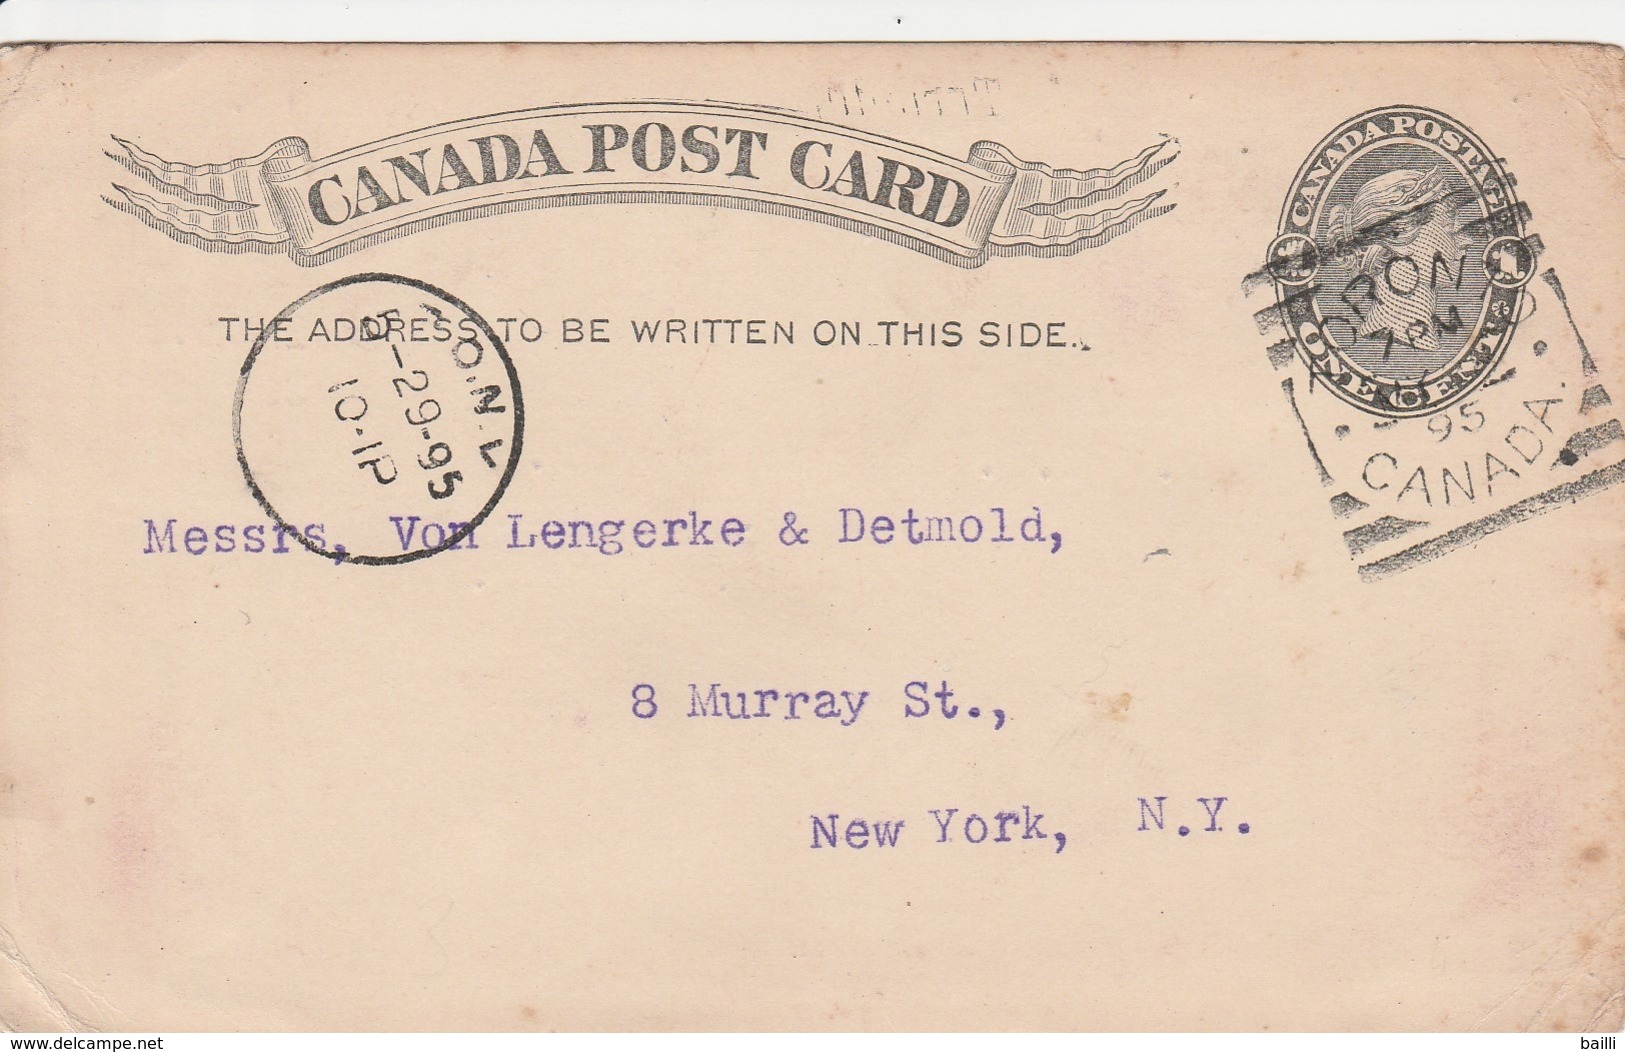 Canada Entier Postal Pour Les Etats Unis 1895 - 1860-1899 Règne De Victoria